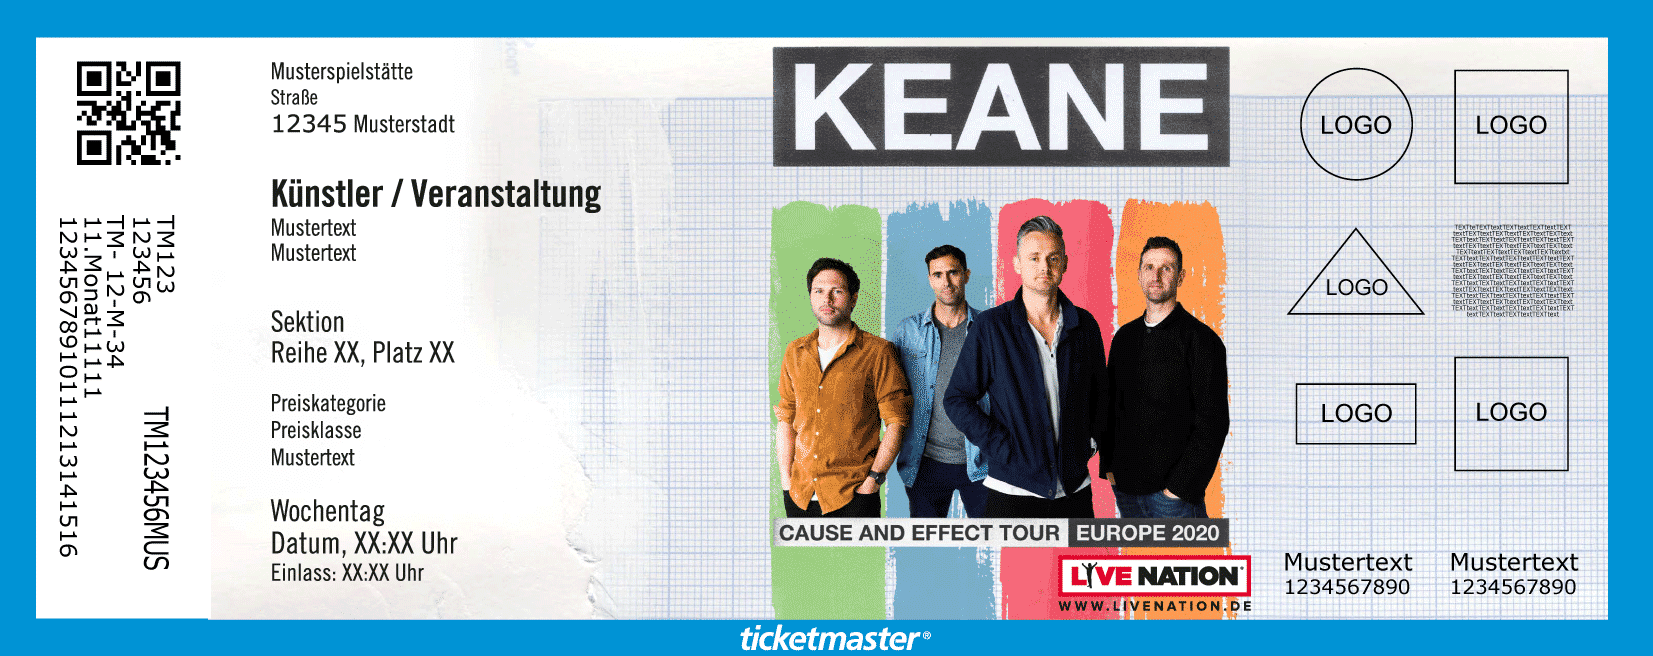 Keane Konzerte 2020